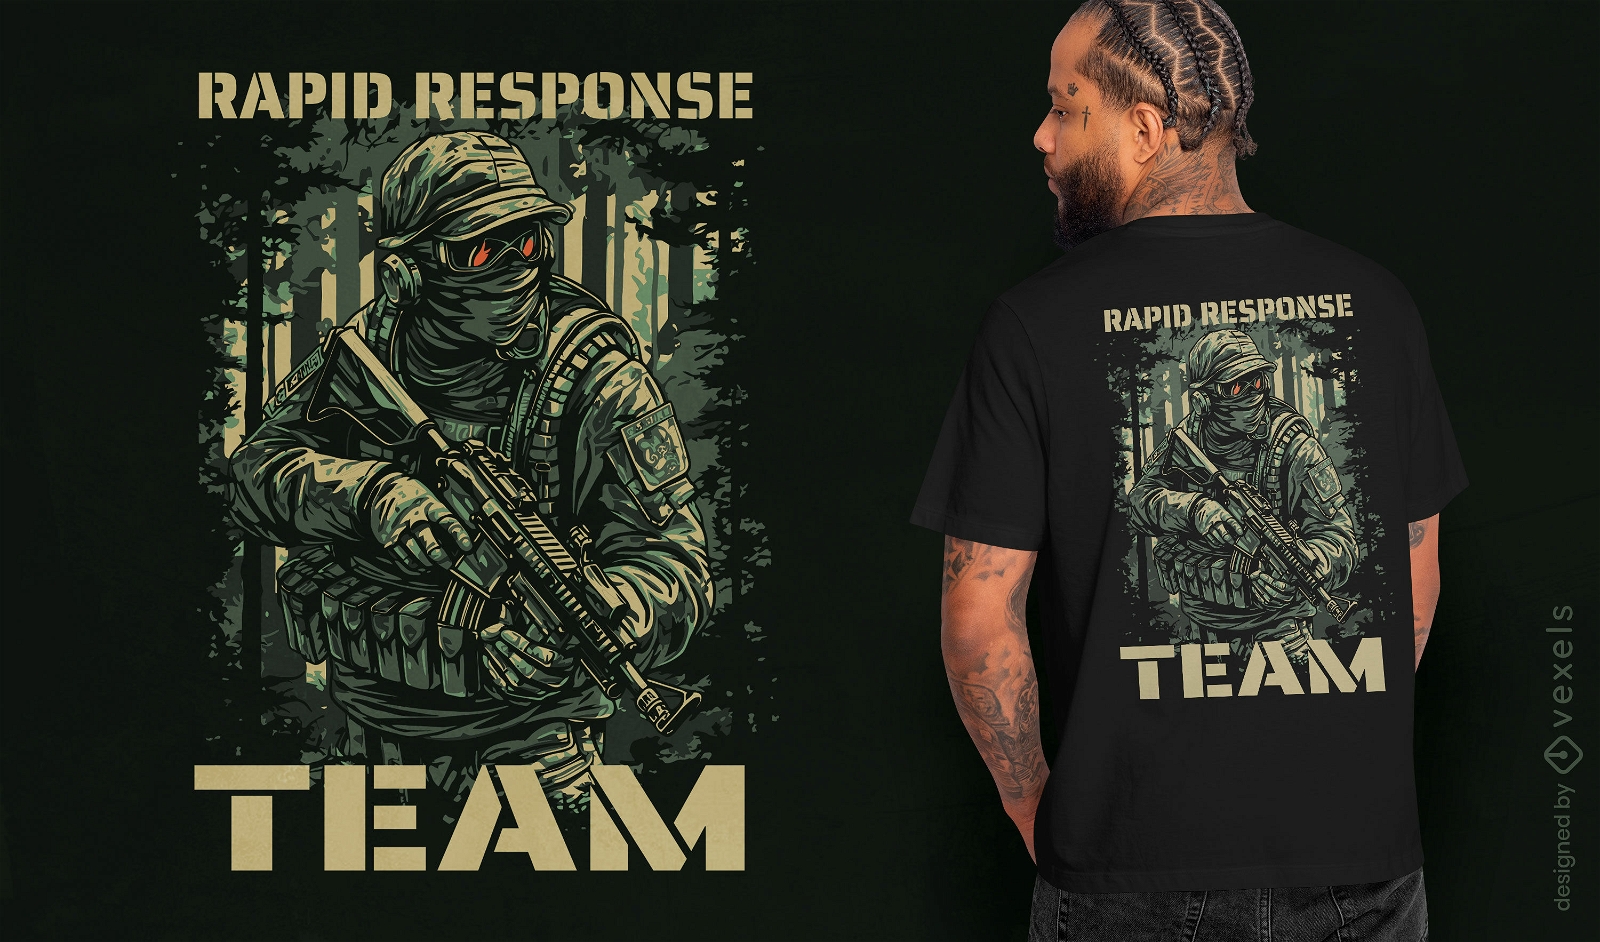 Dise?o de camiseta de soldado del equipo de respuesta r?pida.